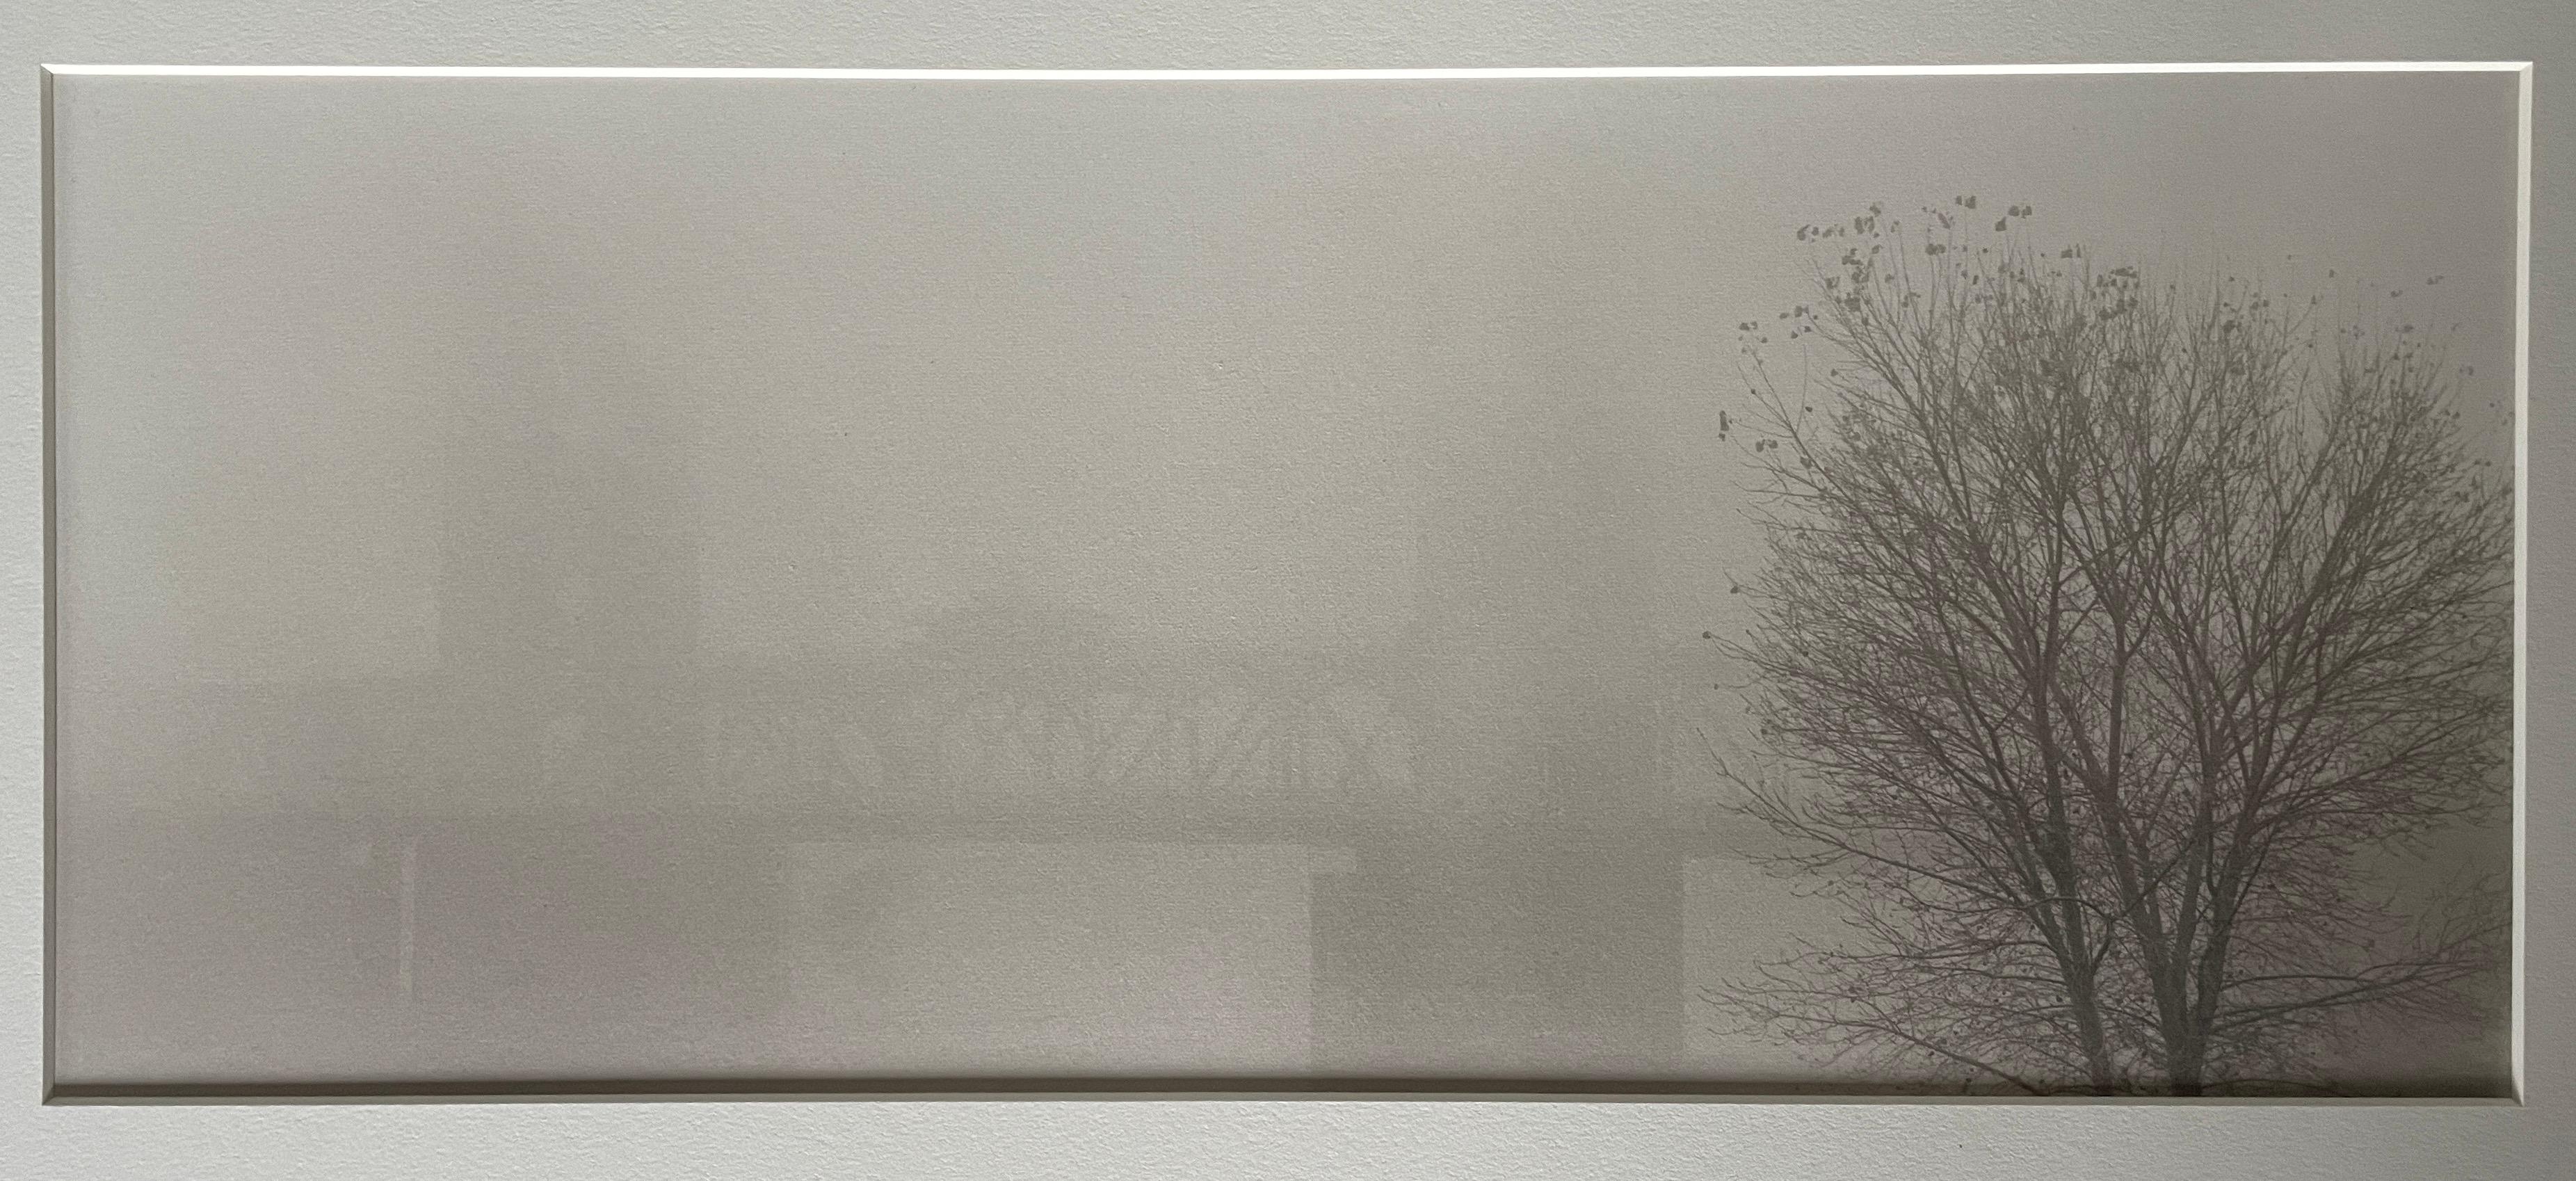 Bridge In Fog, Sacramento, Californie